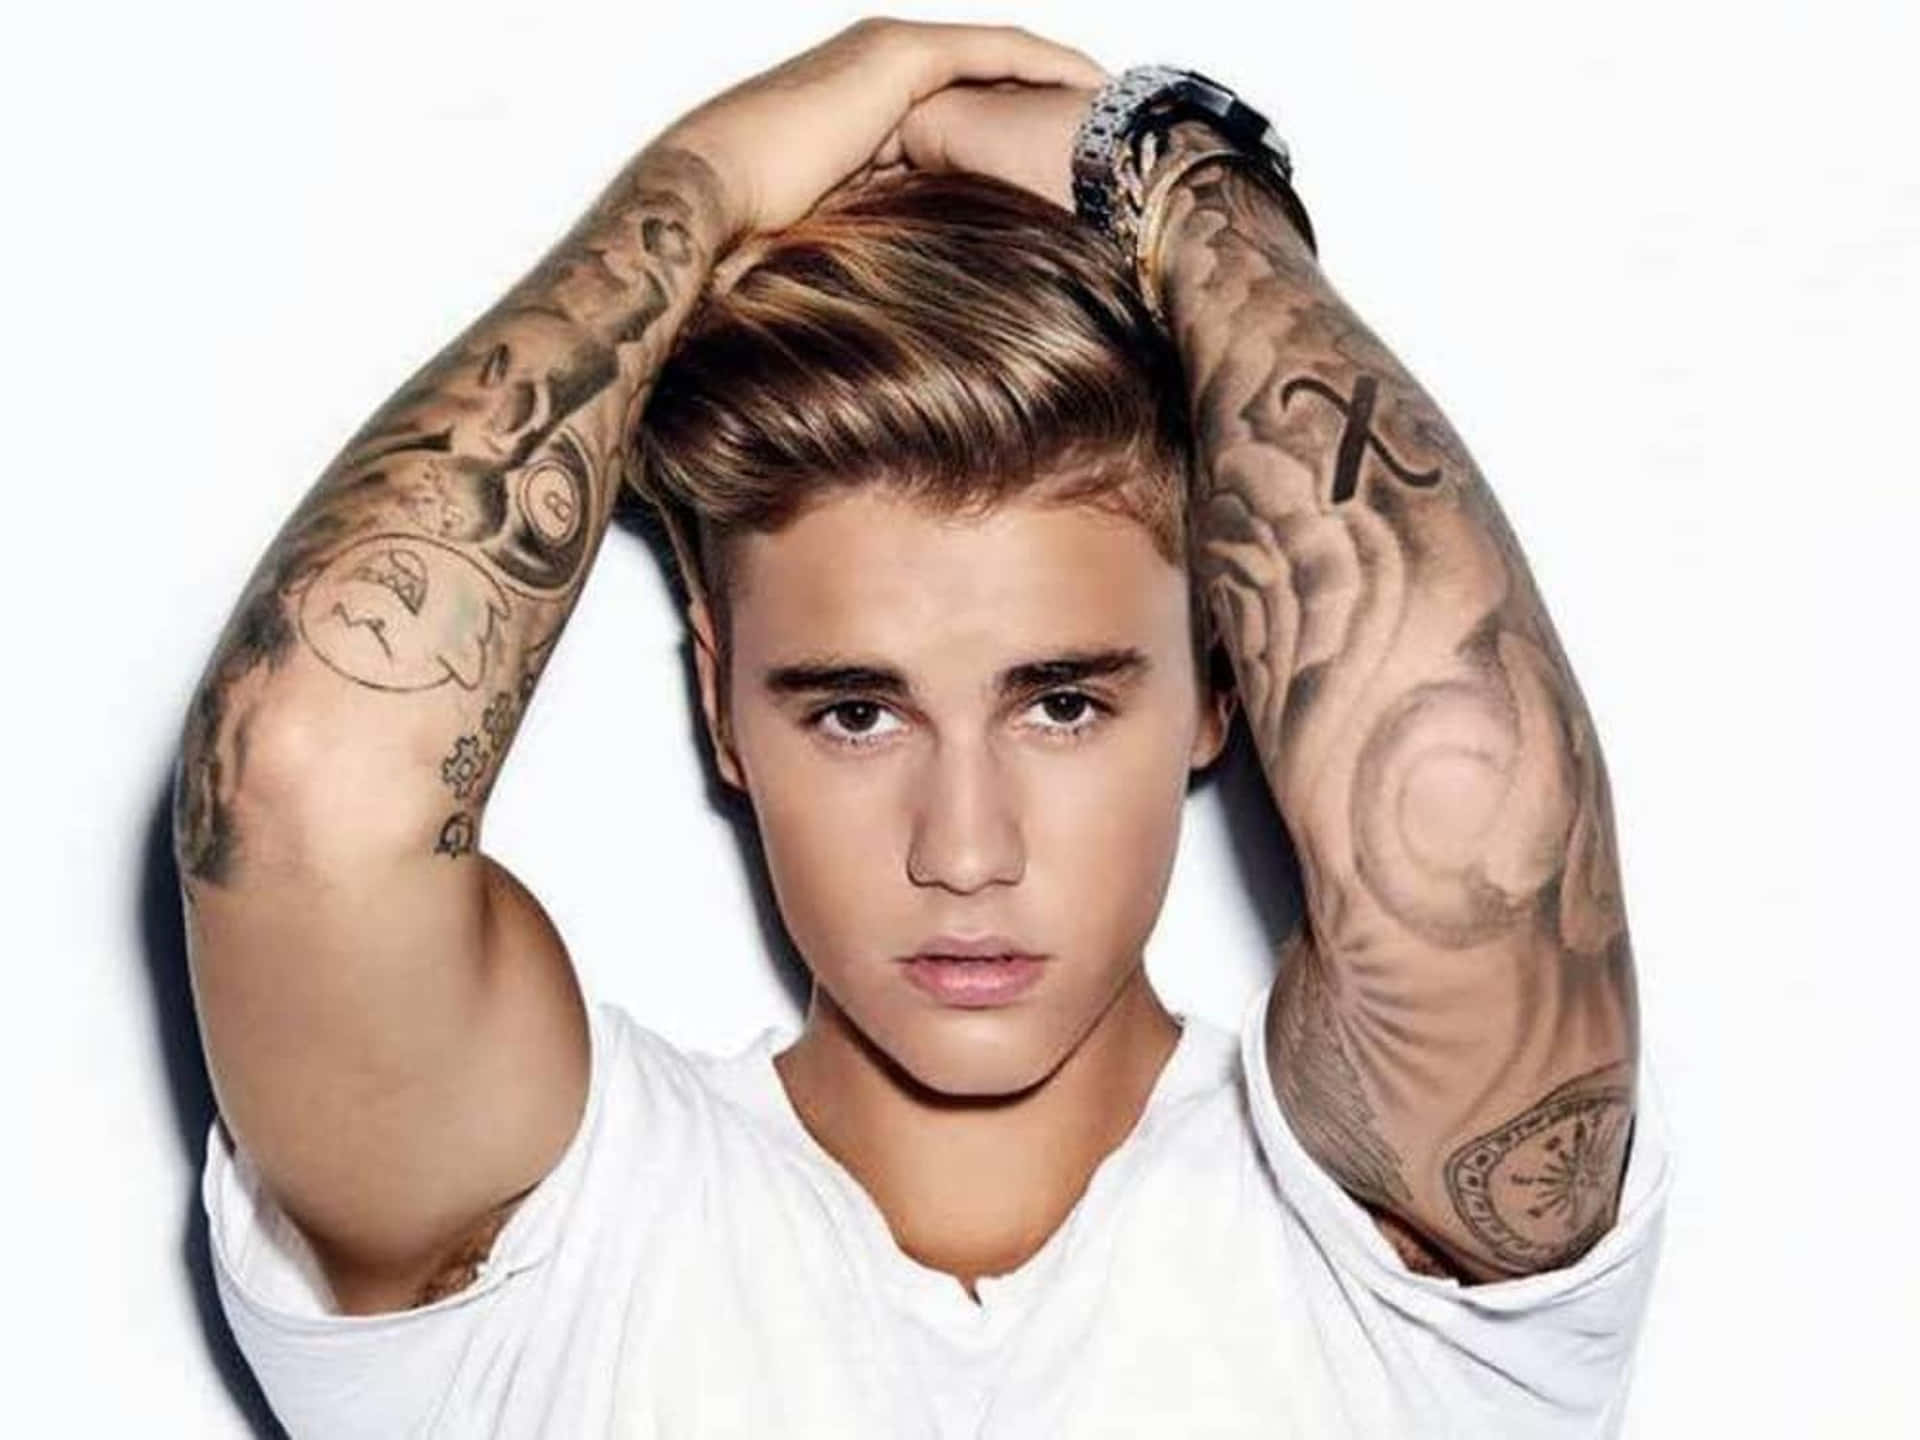 Tattooed Justin Bieber 2015